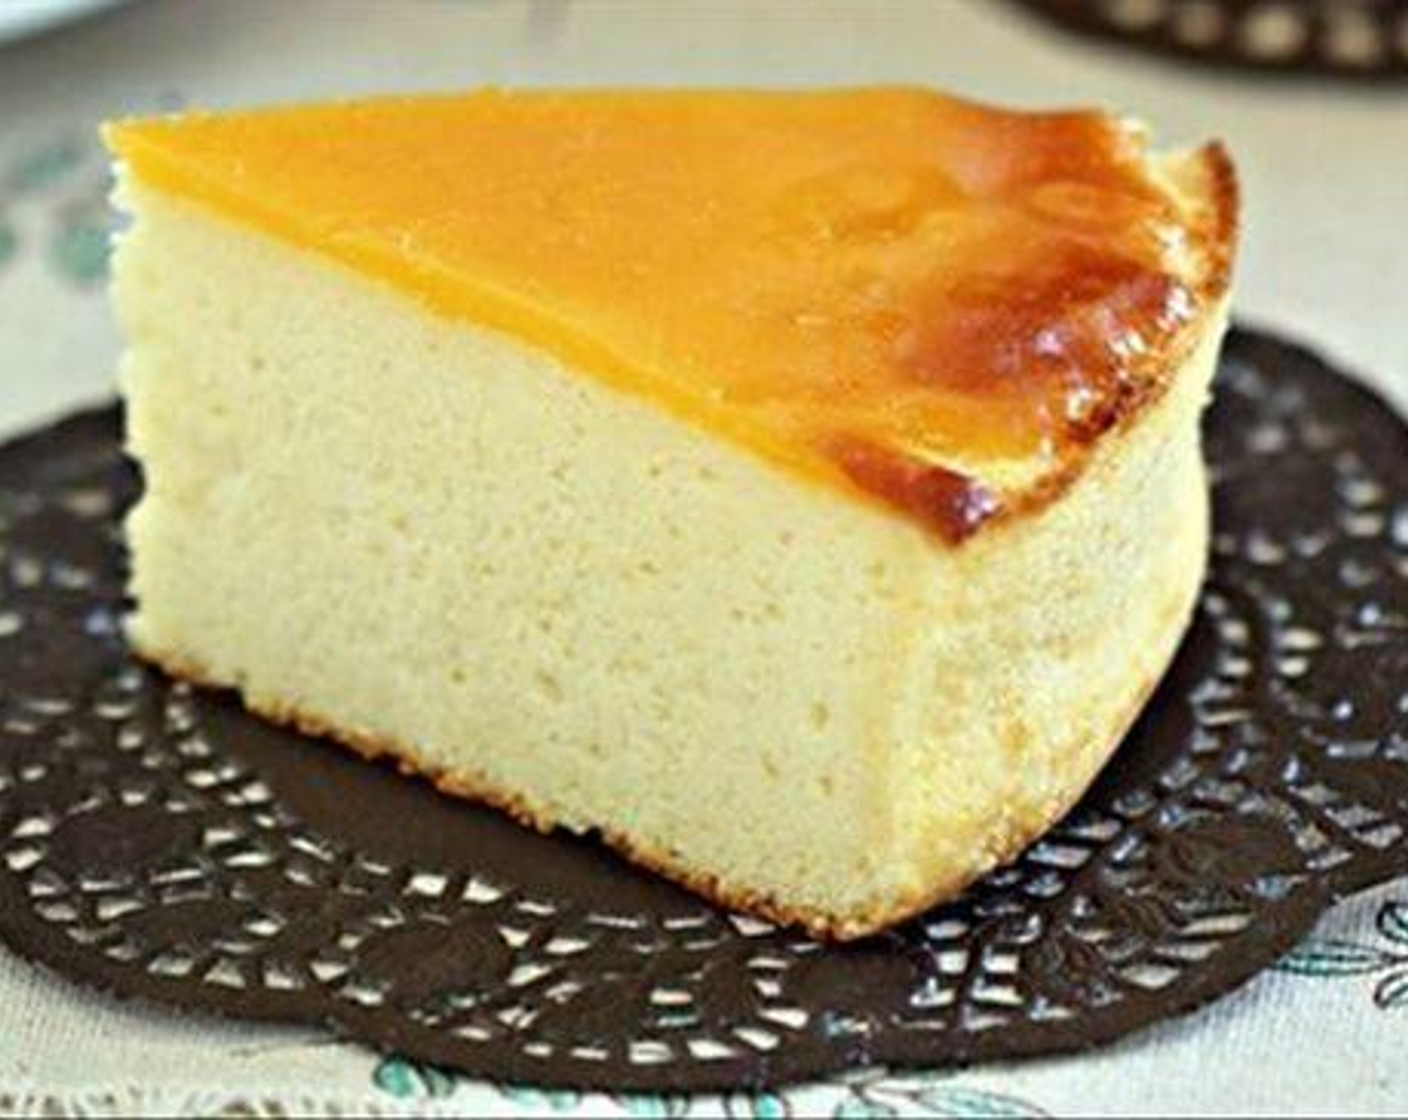 Honey Baked Cheesecake